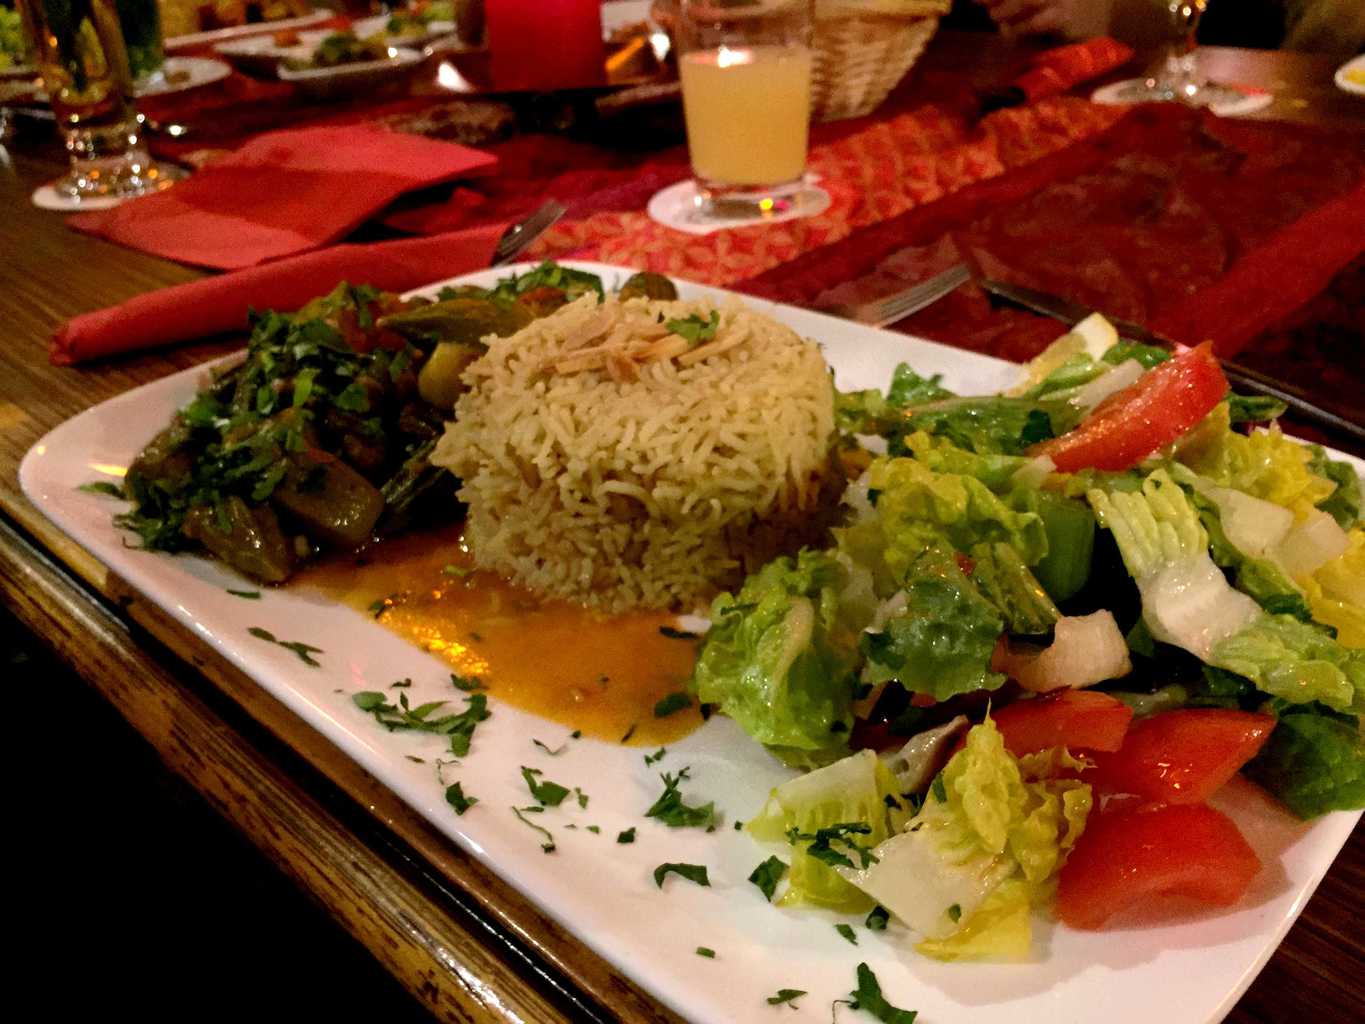 Okraschoten mit Reis und Salat